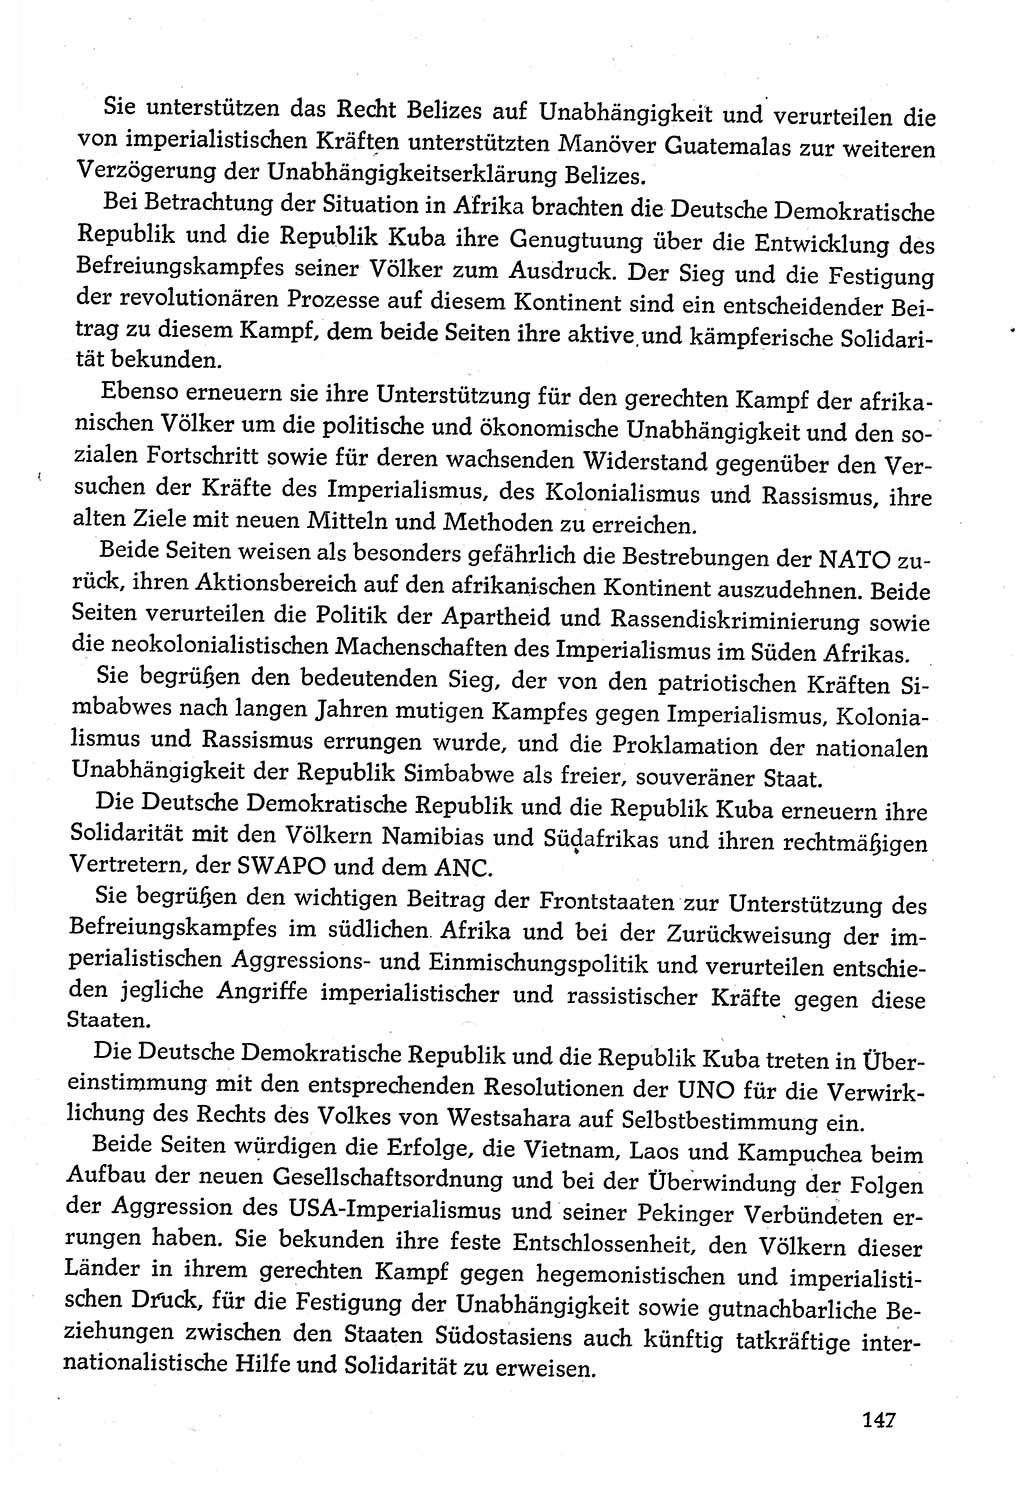 Dokumente der Sozialistischen Einheitspartei Deutschlands (SED) [Deutsche Demokratische Republik (DDR)] 1980-1981, Seite 147 (Dok. SED DDR 1980-1981, S. 147)